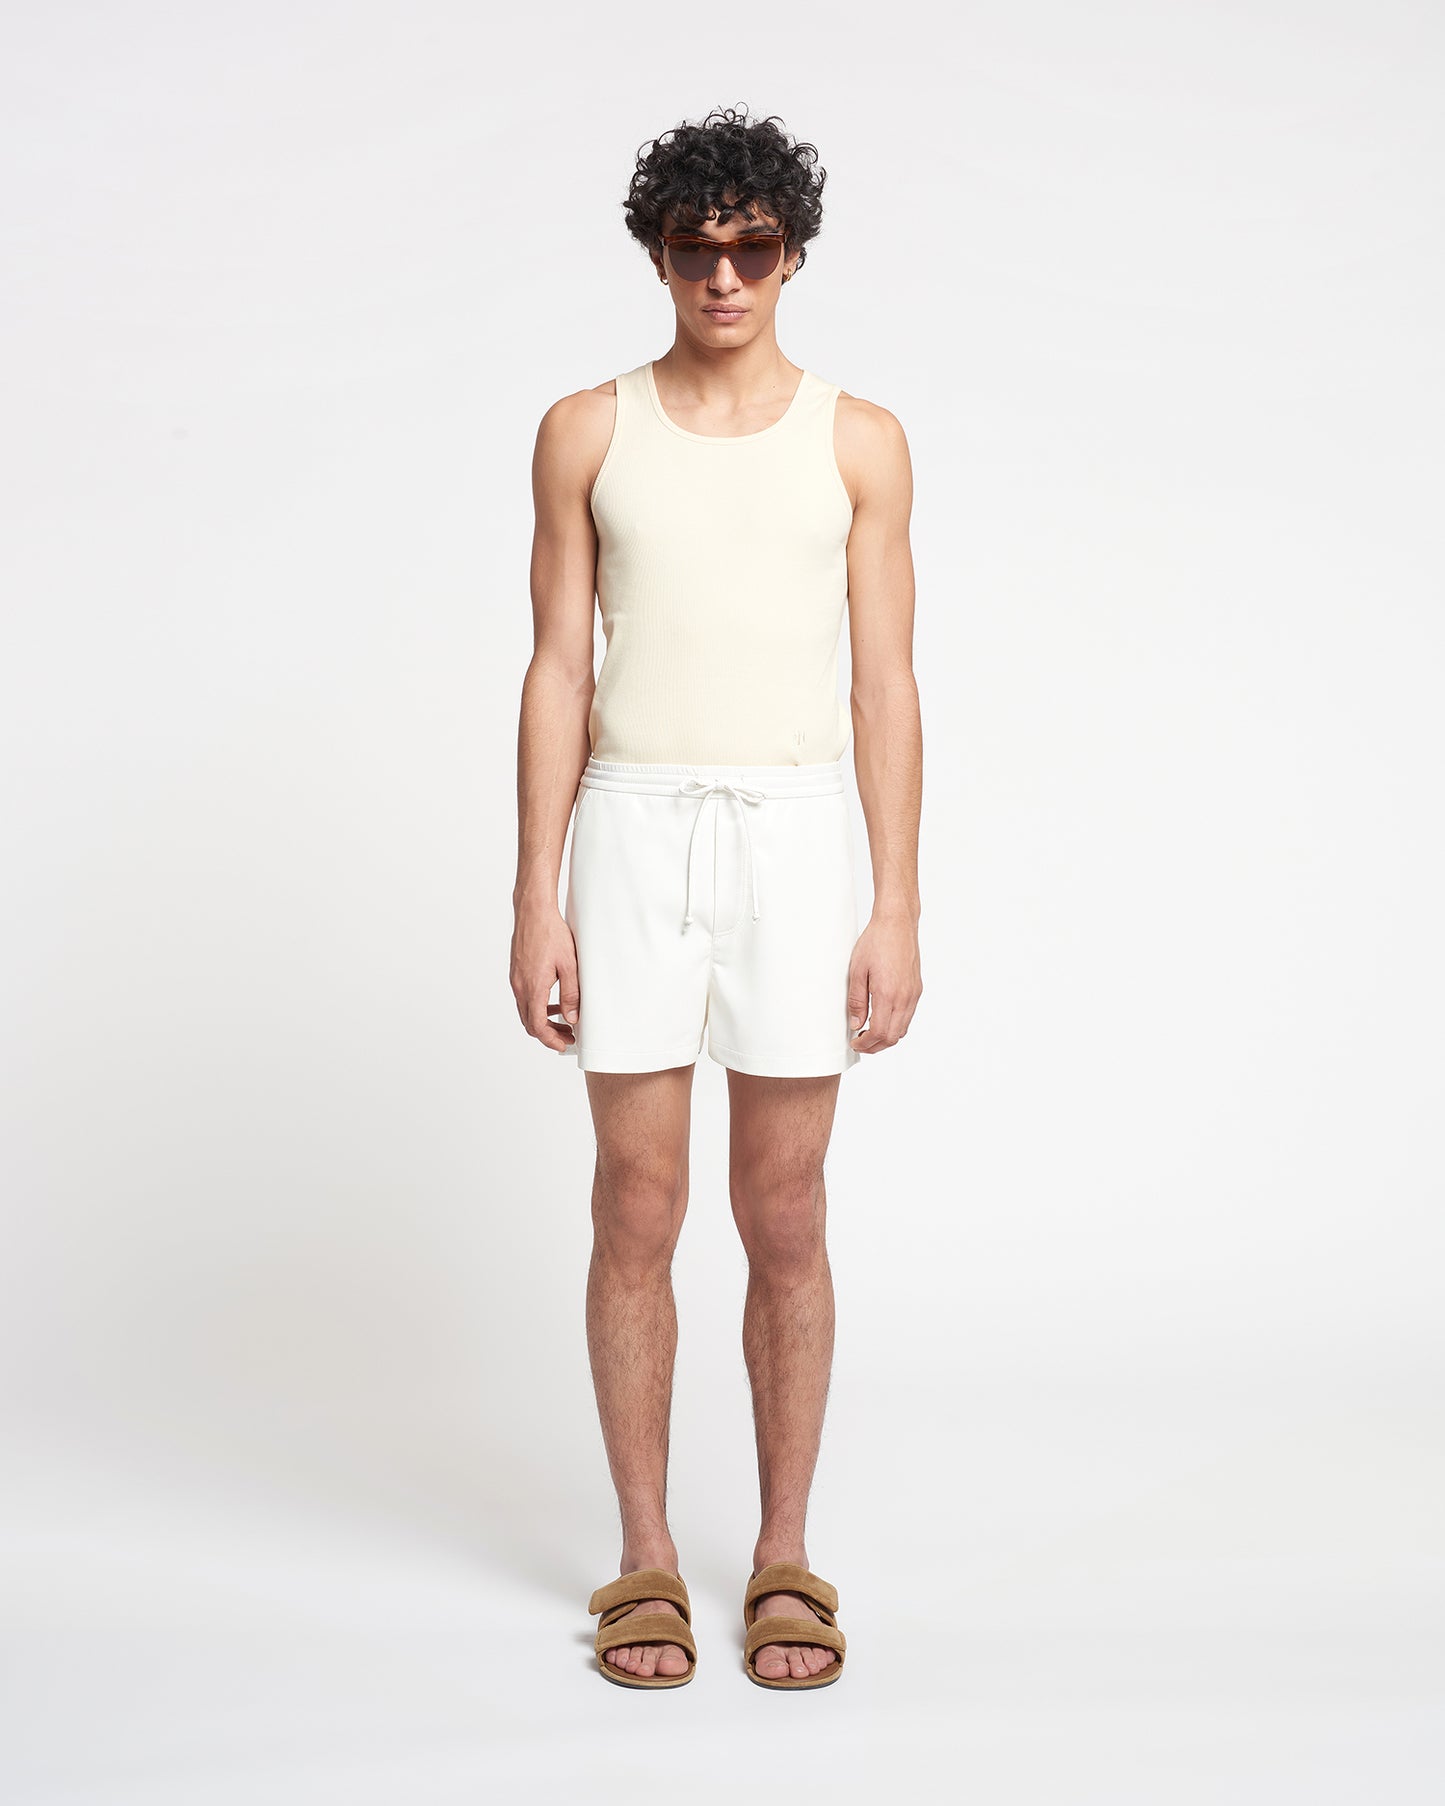 Amil - Okobor™ Alt-Leather Shorts - White